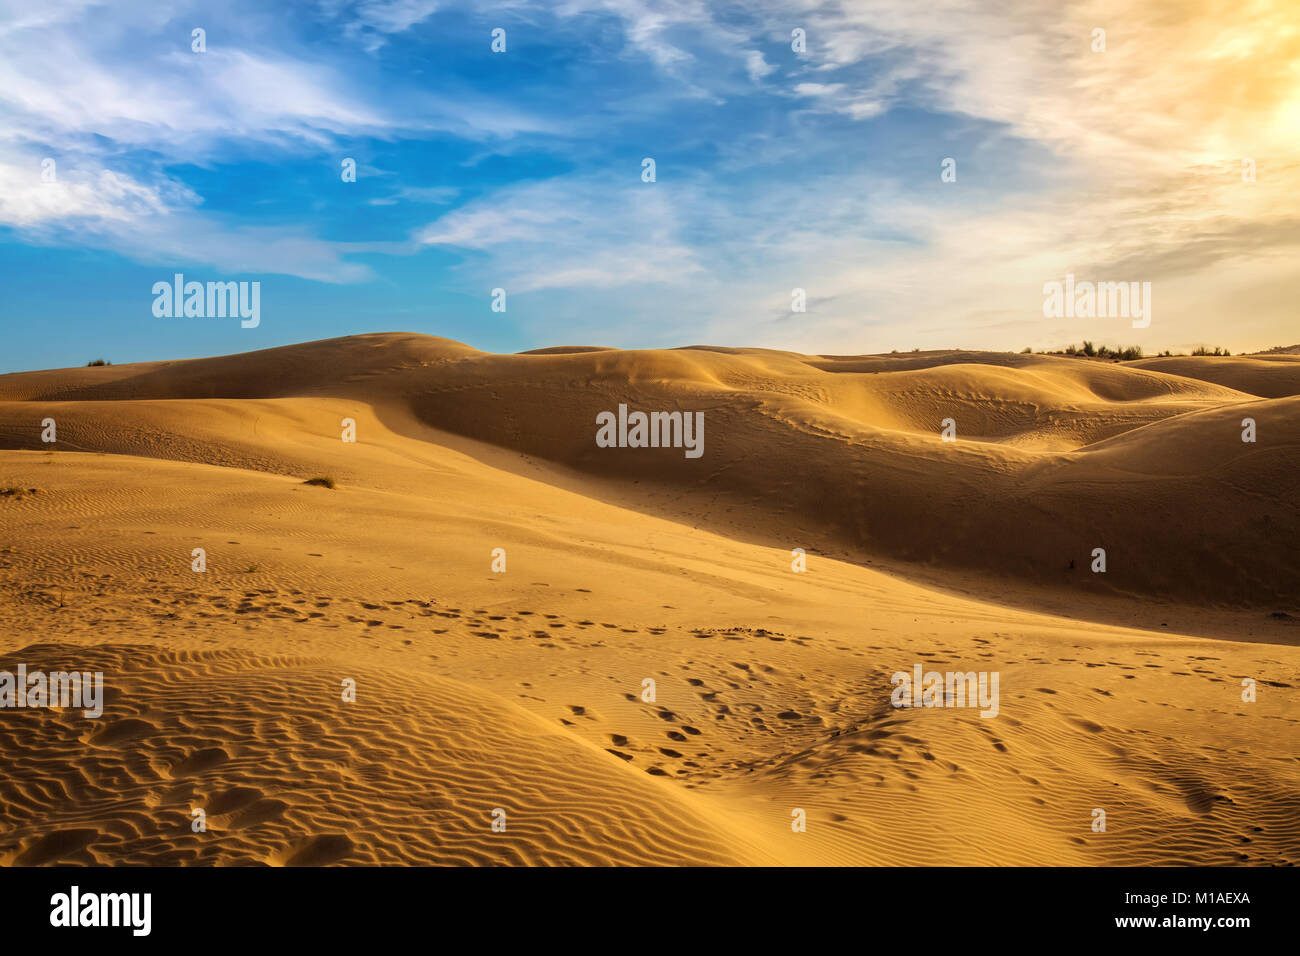 Désert du Thar coucher de soleil avec des dunes de sable à Jaisalmer, Rajasthan Inde. Banque D'Images